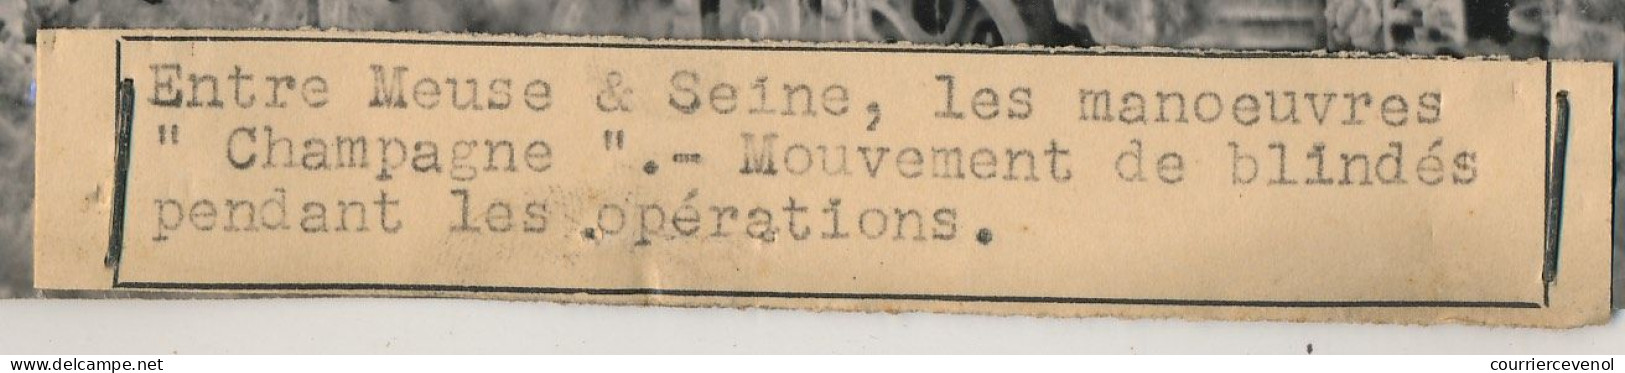 FRANCE - Photo De Presse Keystone - Entre Meuse Et Seine, Les Manoeuvres "Champagne" - Mouvement De Blindés... - Oorlog, Militair